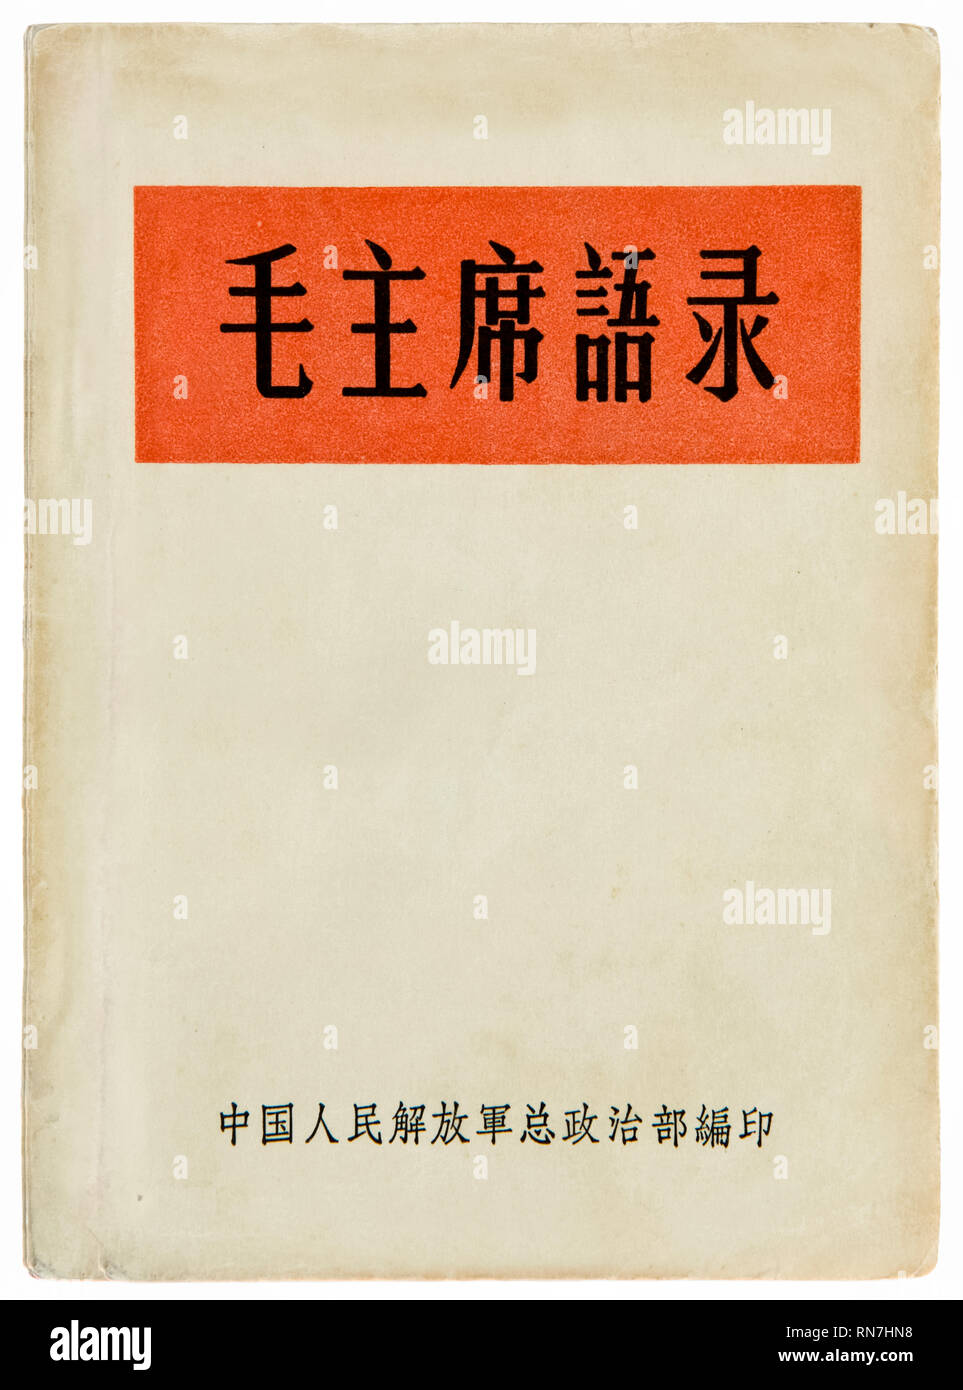 Abdeckung an der Vorderseite von "das kleine rote Buch" (Zitate aus den Vorsitzenden Mao Tse-tung), die Erklärungen des Vorsitzenden Mao, Chinesische Kommunistische Revolutionäre und Gründervater der Volksrepublik China erste Ausgabe 1964 veröffentlicht. Stockfoto